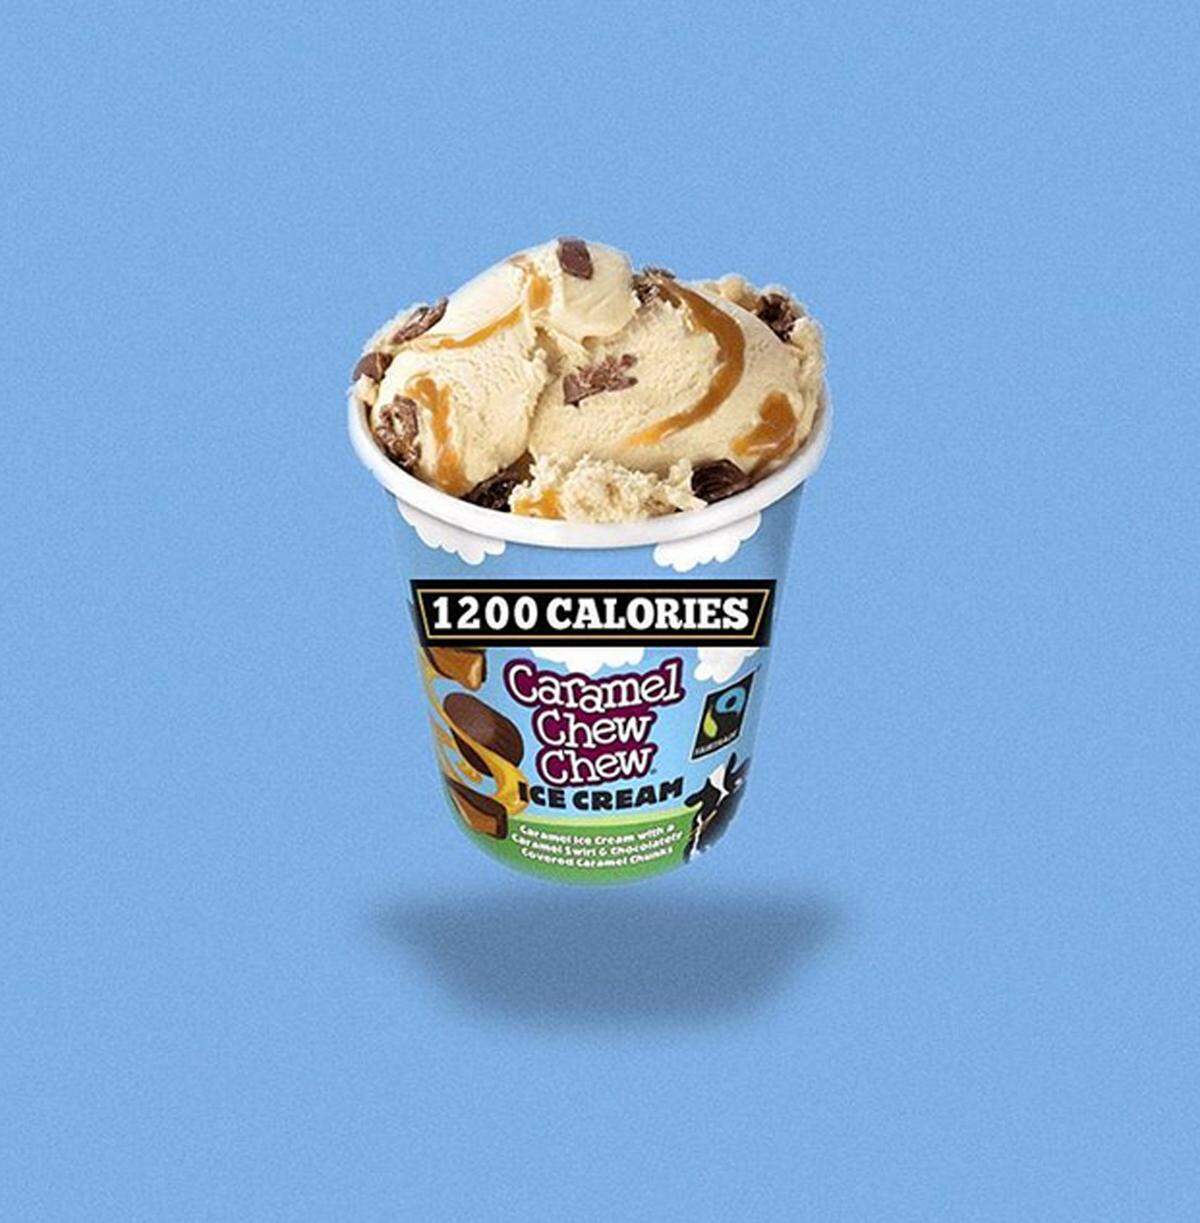 Die große Eispackung von Ben & Jerry's hat sogar stolze 1200 Kalorien.